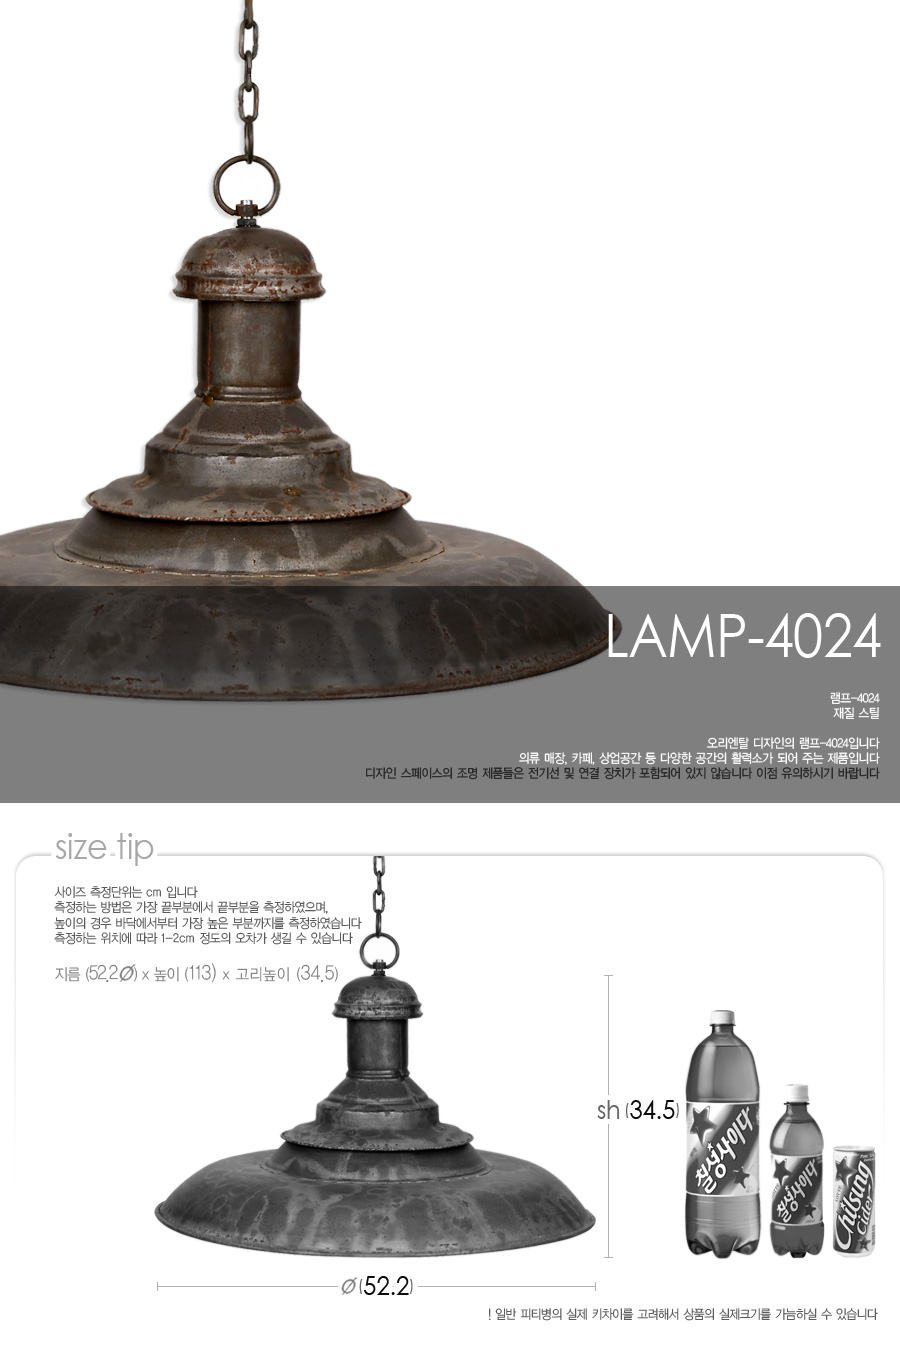 lamp-4024_01.jpg